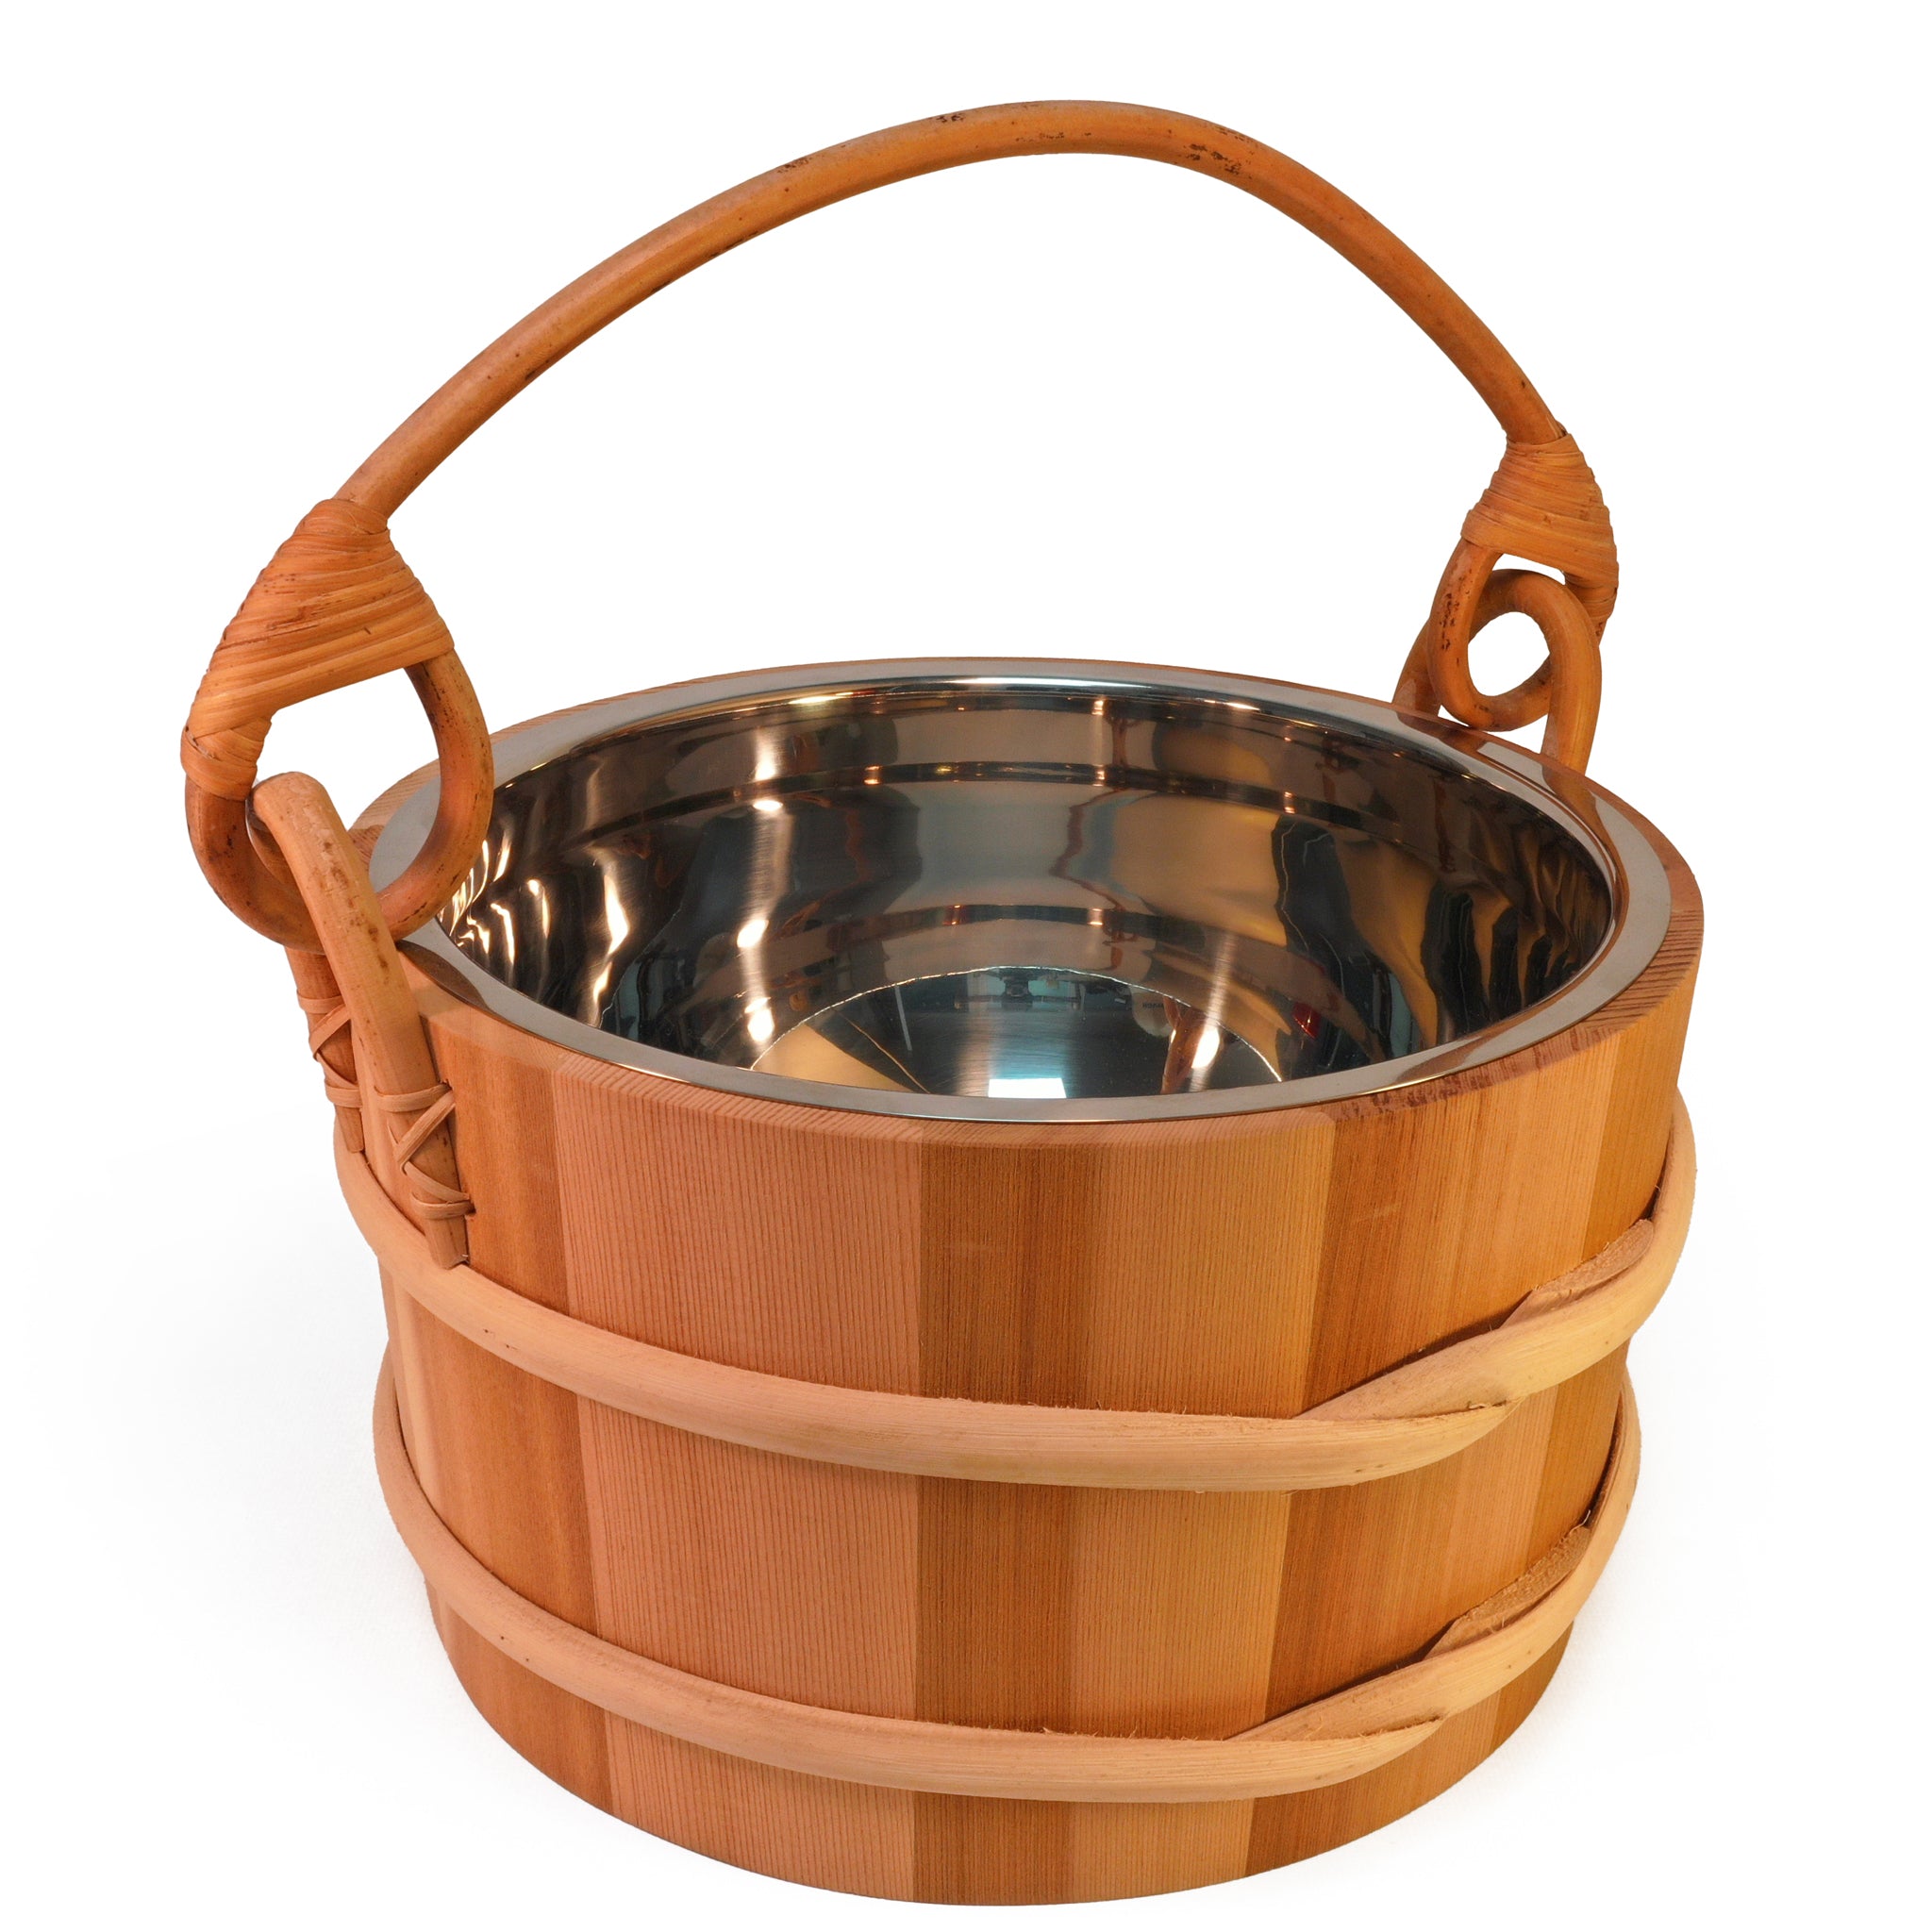 Cedar sauna bucket with stainless steel insert on white background